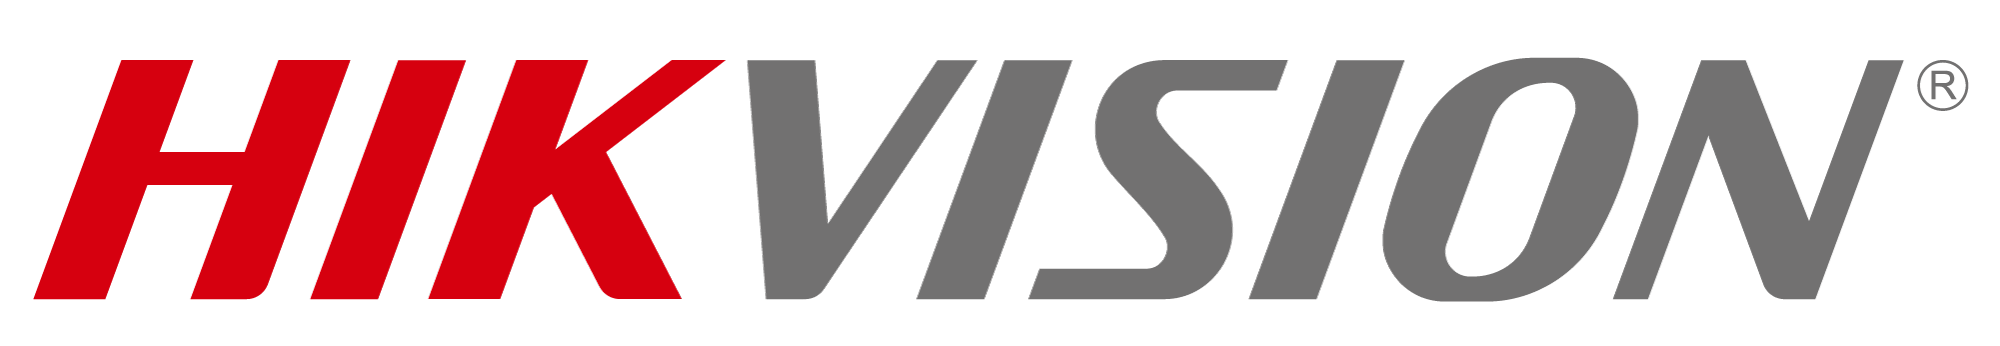 Hikvision-logo-colour-1